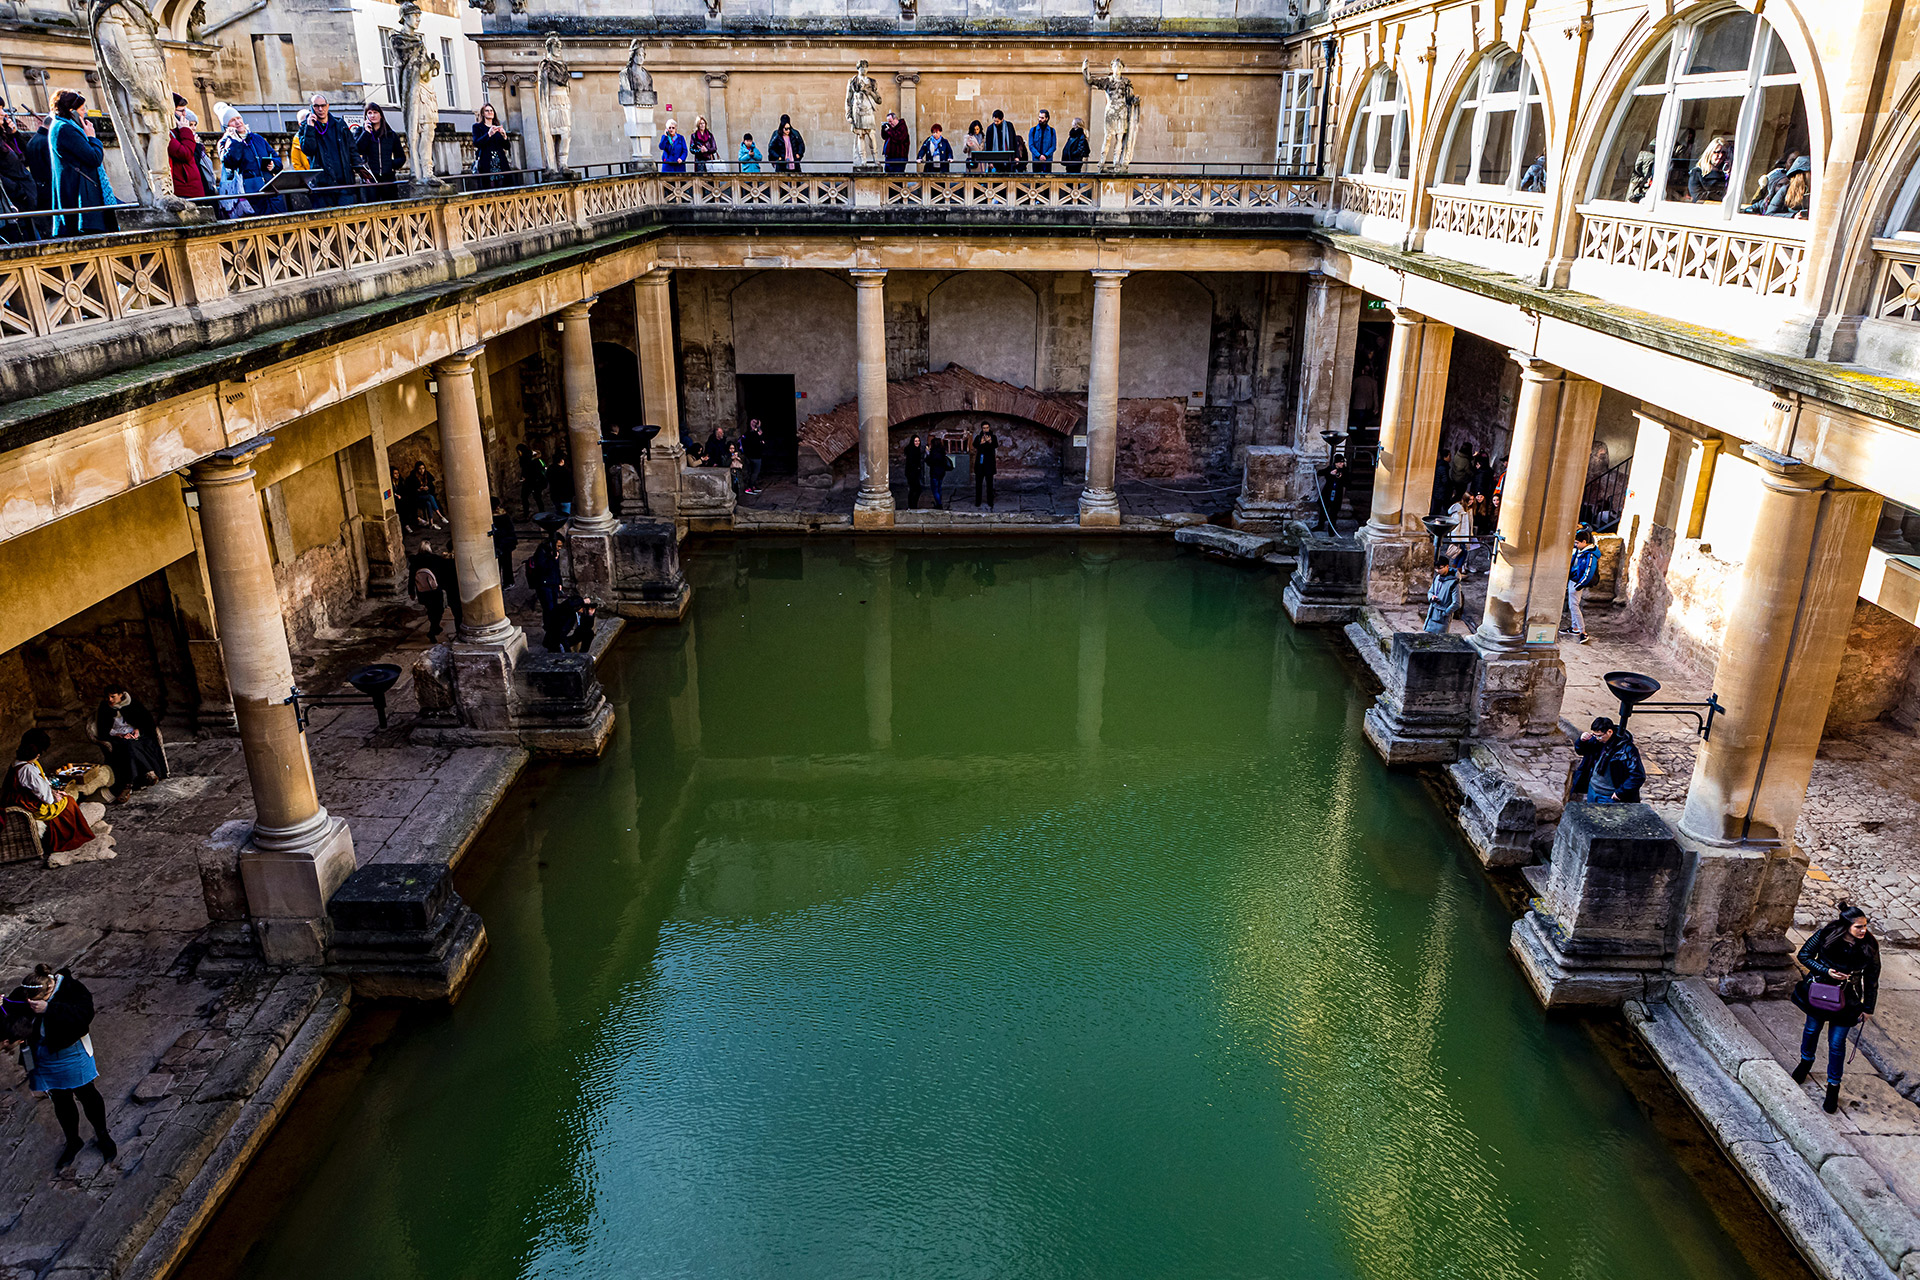 Roman Baths in Bath, England